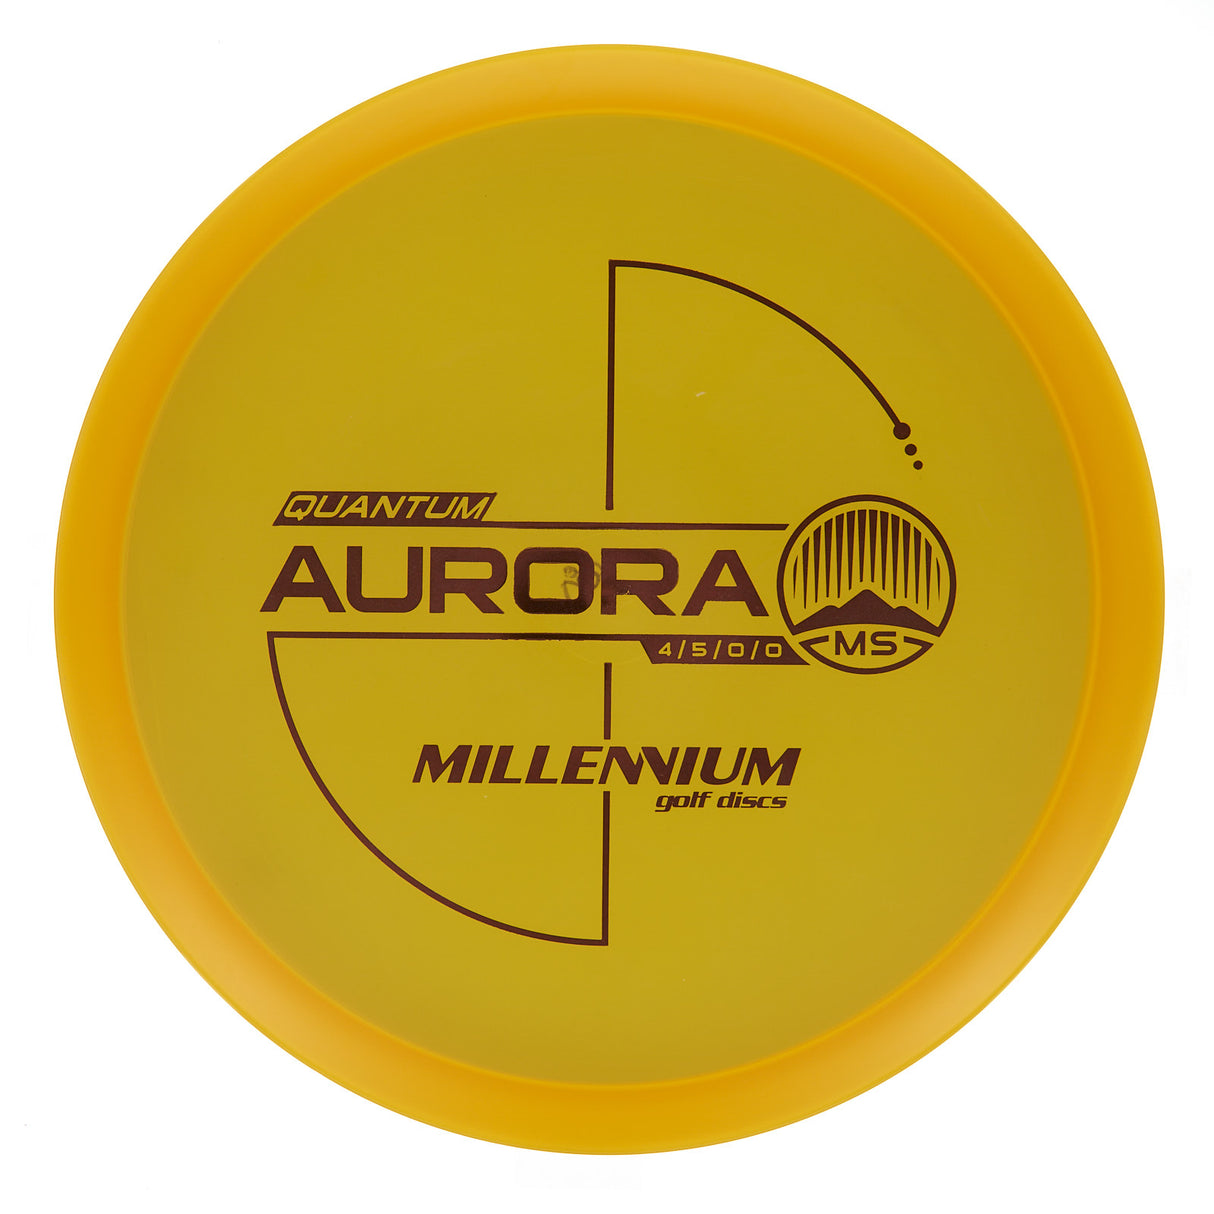 Millennium Aurora MS - Quantum 180g | Style 0003